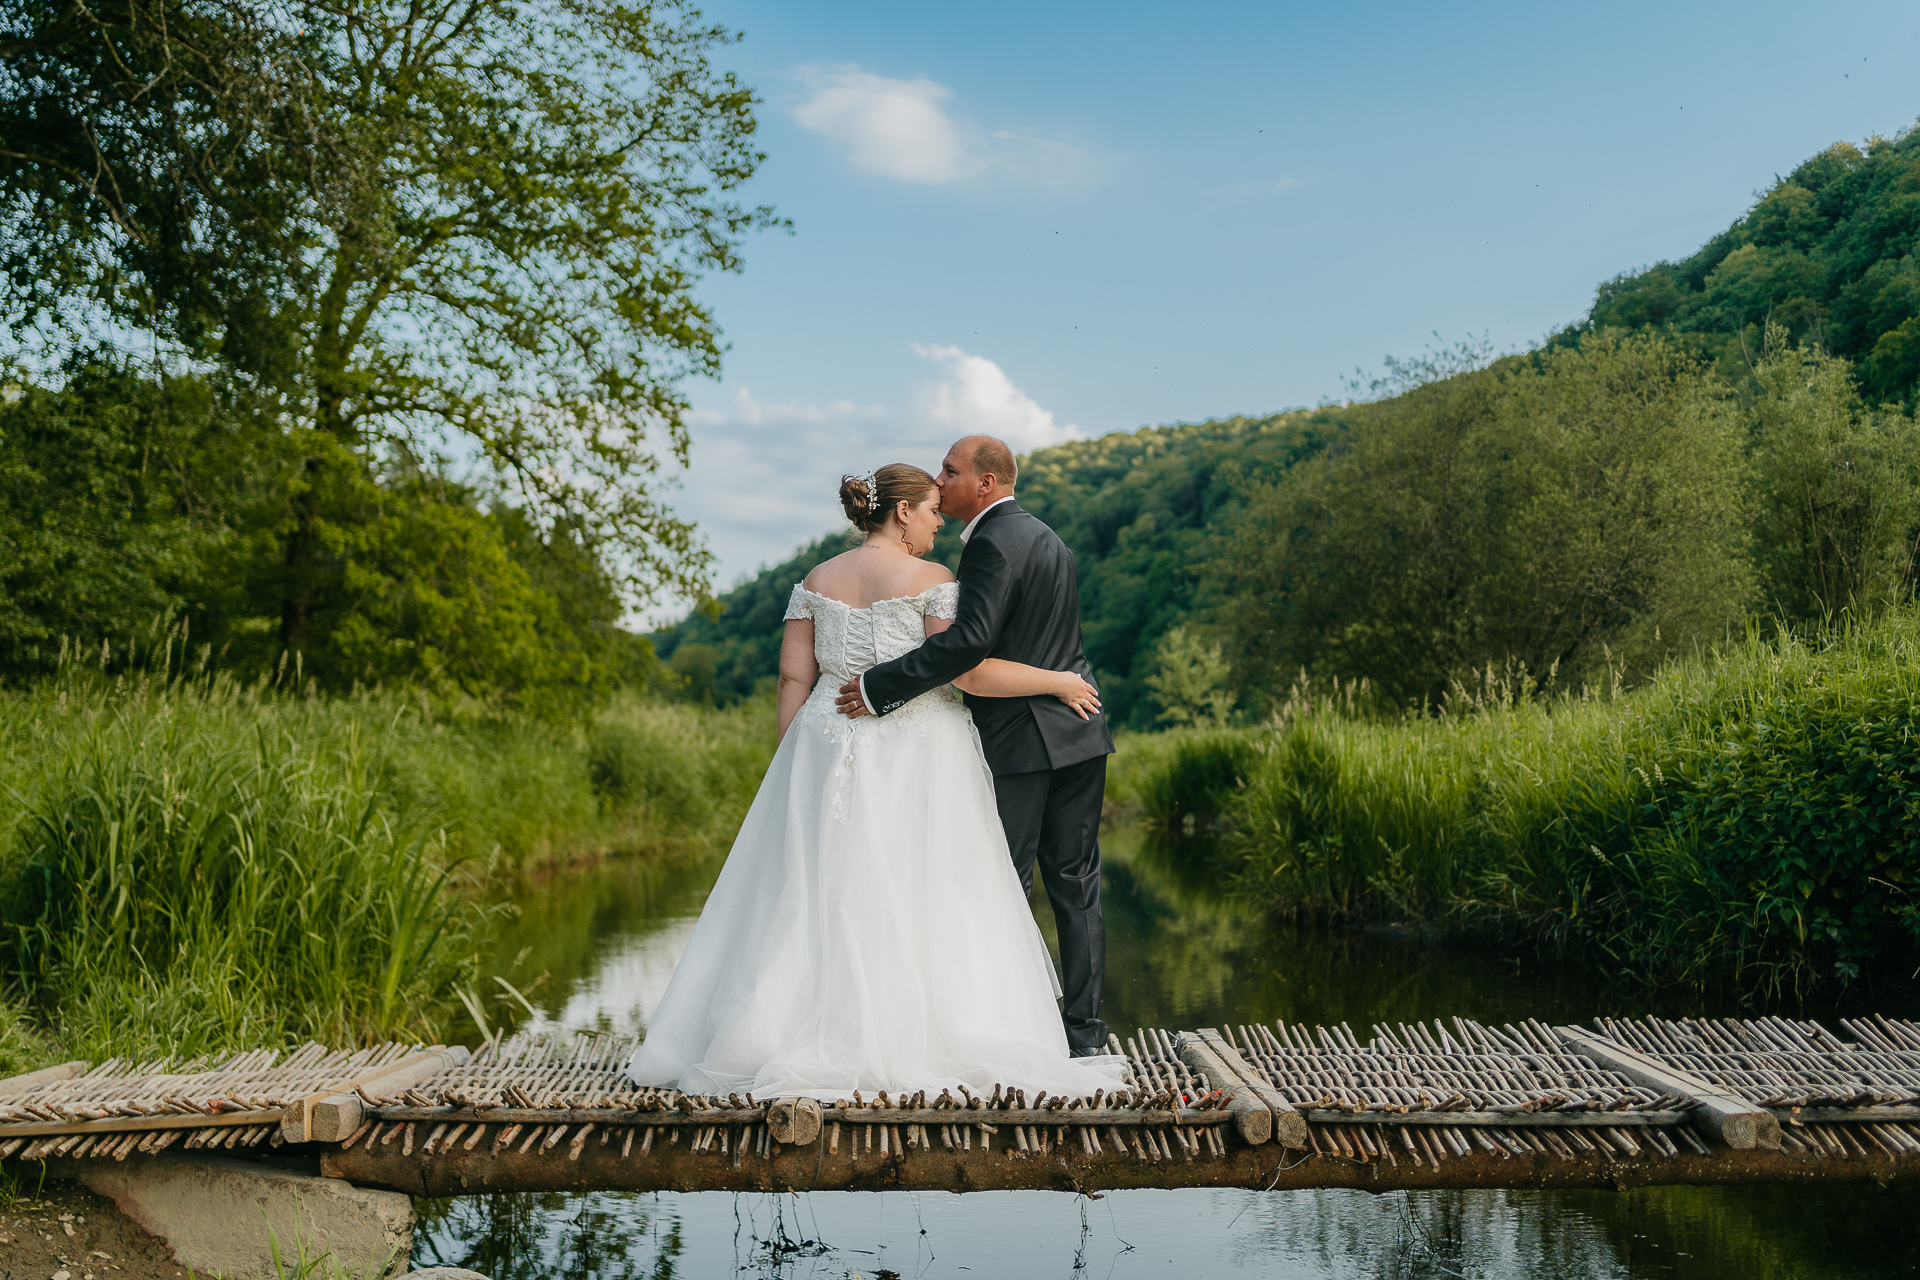 Un photographe capturant un mariage sur un pont en bois au-dessus d'une rivière.